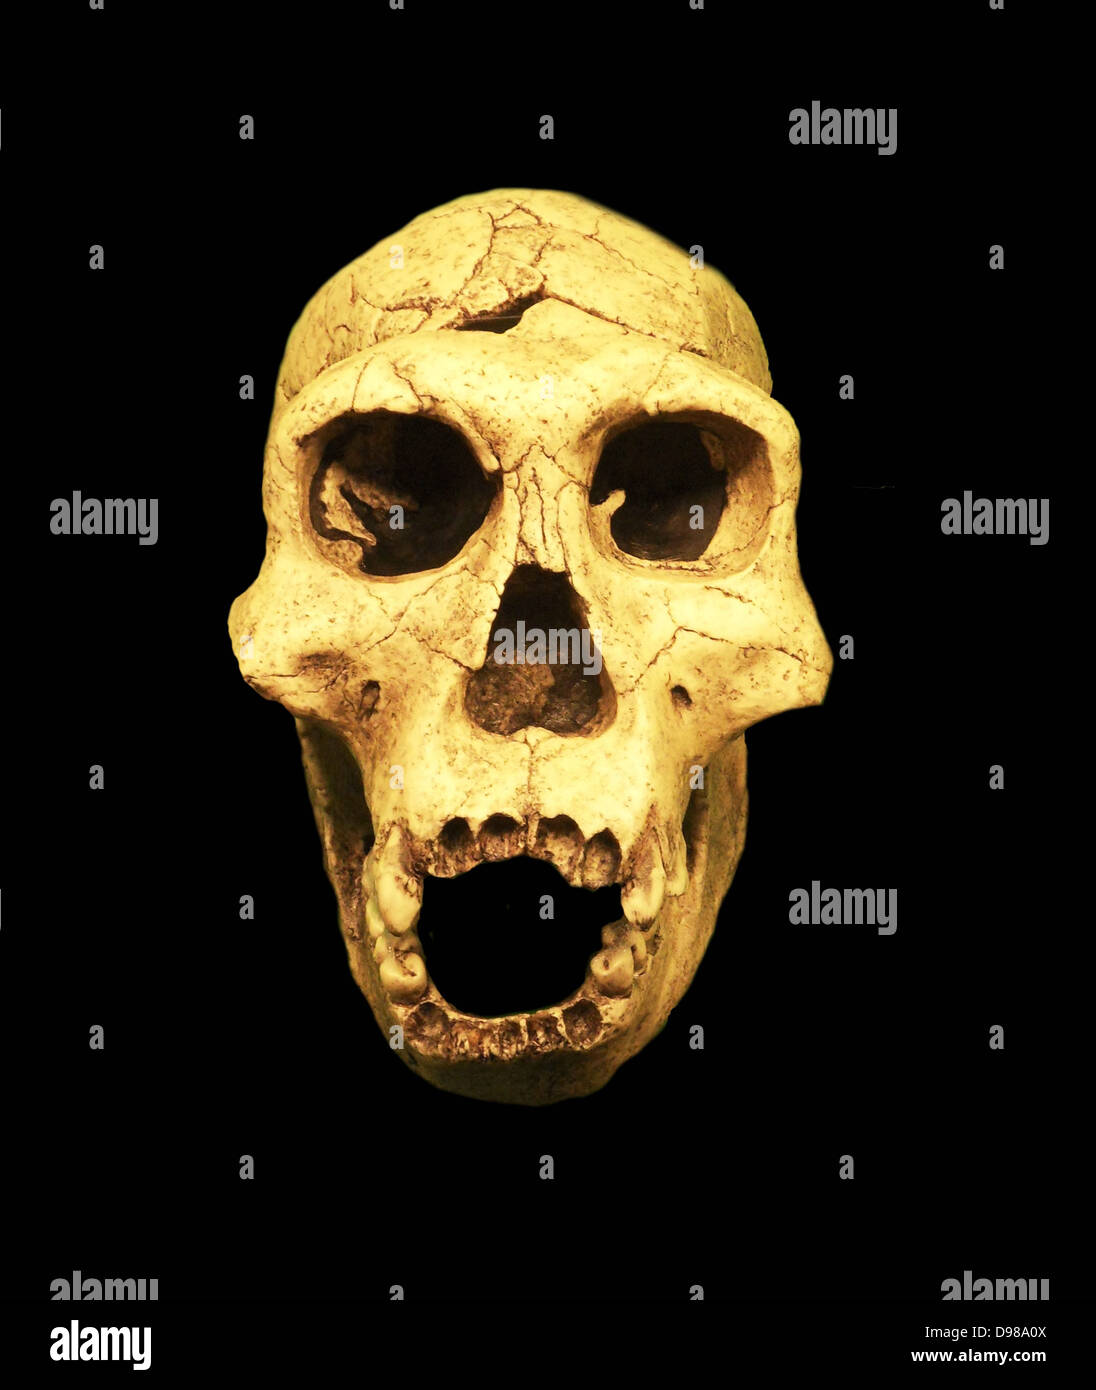 Homo erectus, erloschenen hominid zwischen 1,6 Millionen und 250.000 Jahren leben. Homo erectus wird gedacht, in Afrika von H. habilis entwickelt zu haben, das erste Mitglied der Gattung Homo. Anatomisch und physiologisch, H. erectus ähnelt zeitgenössischen menschlichen Stockfoto